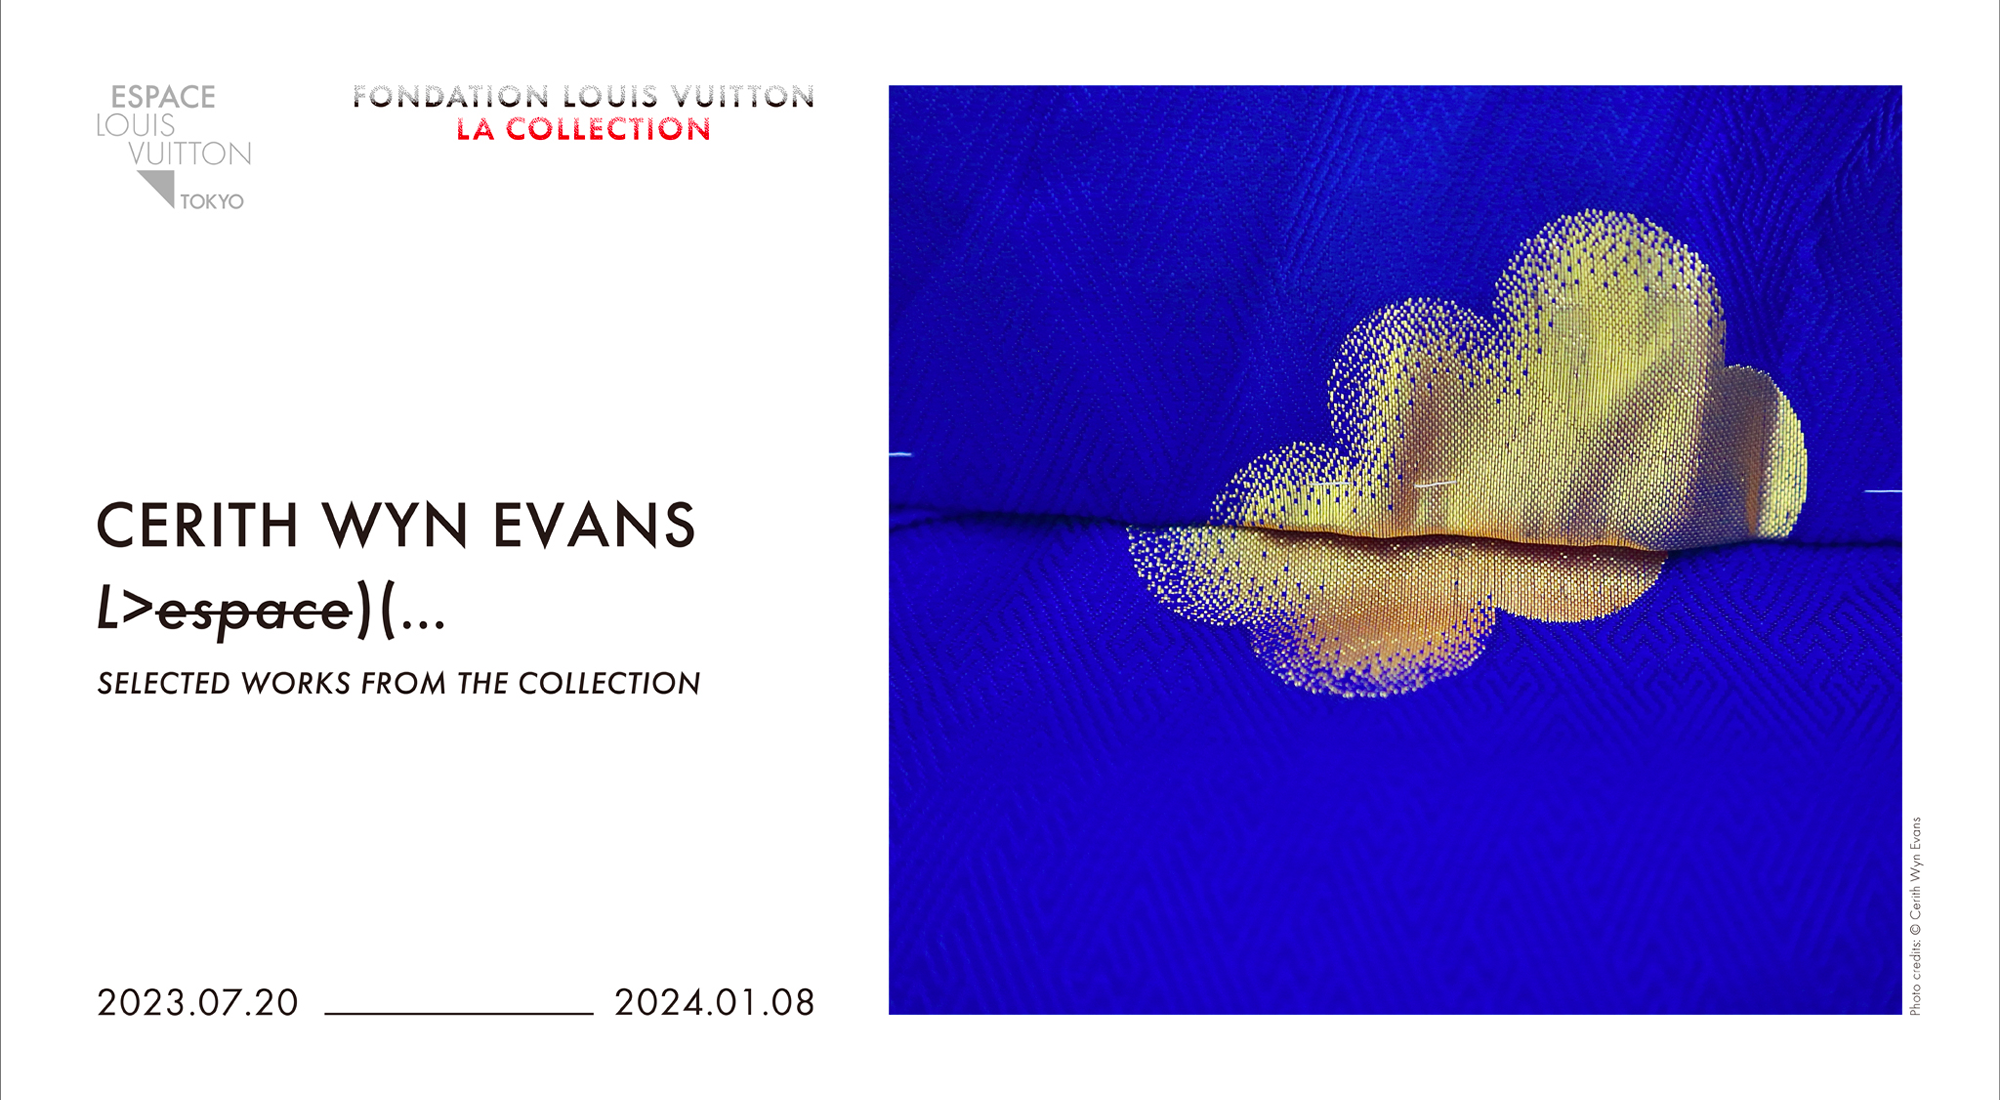 Espace Louis Vuitton Tokyo: Cerith Wyn Evans L>espace)(…